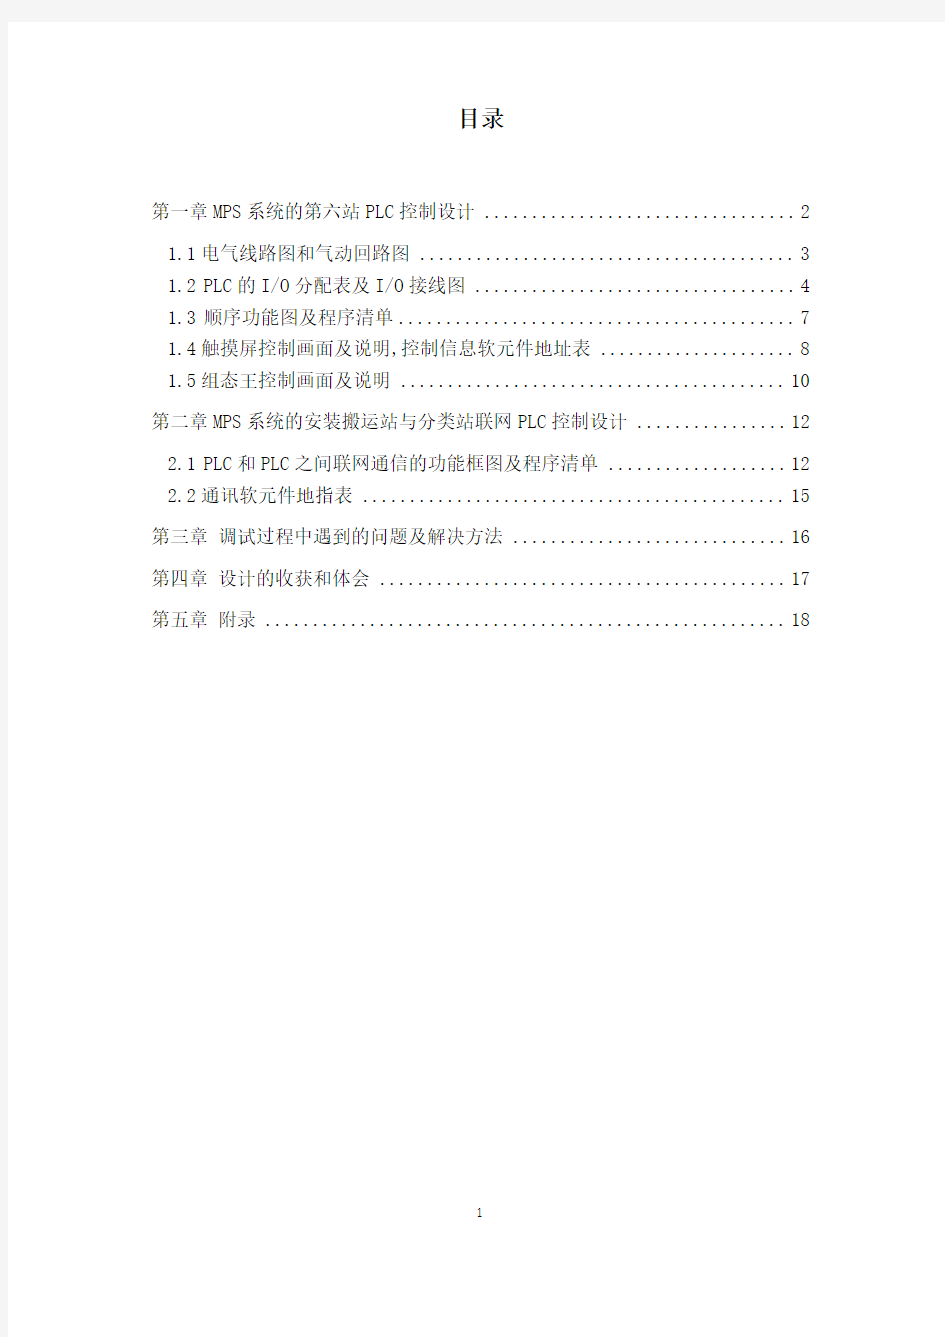 江苏大学机电系统综合课程设计第六组(最新)